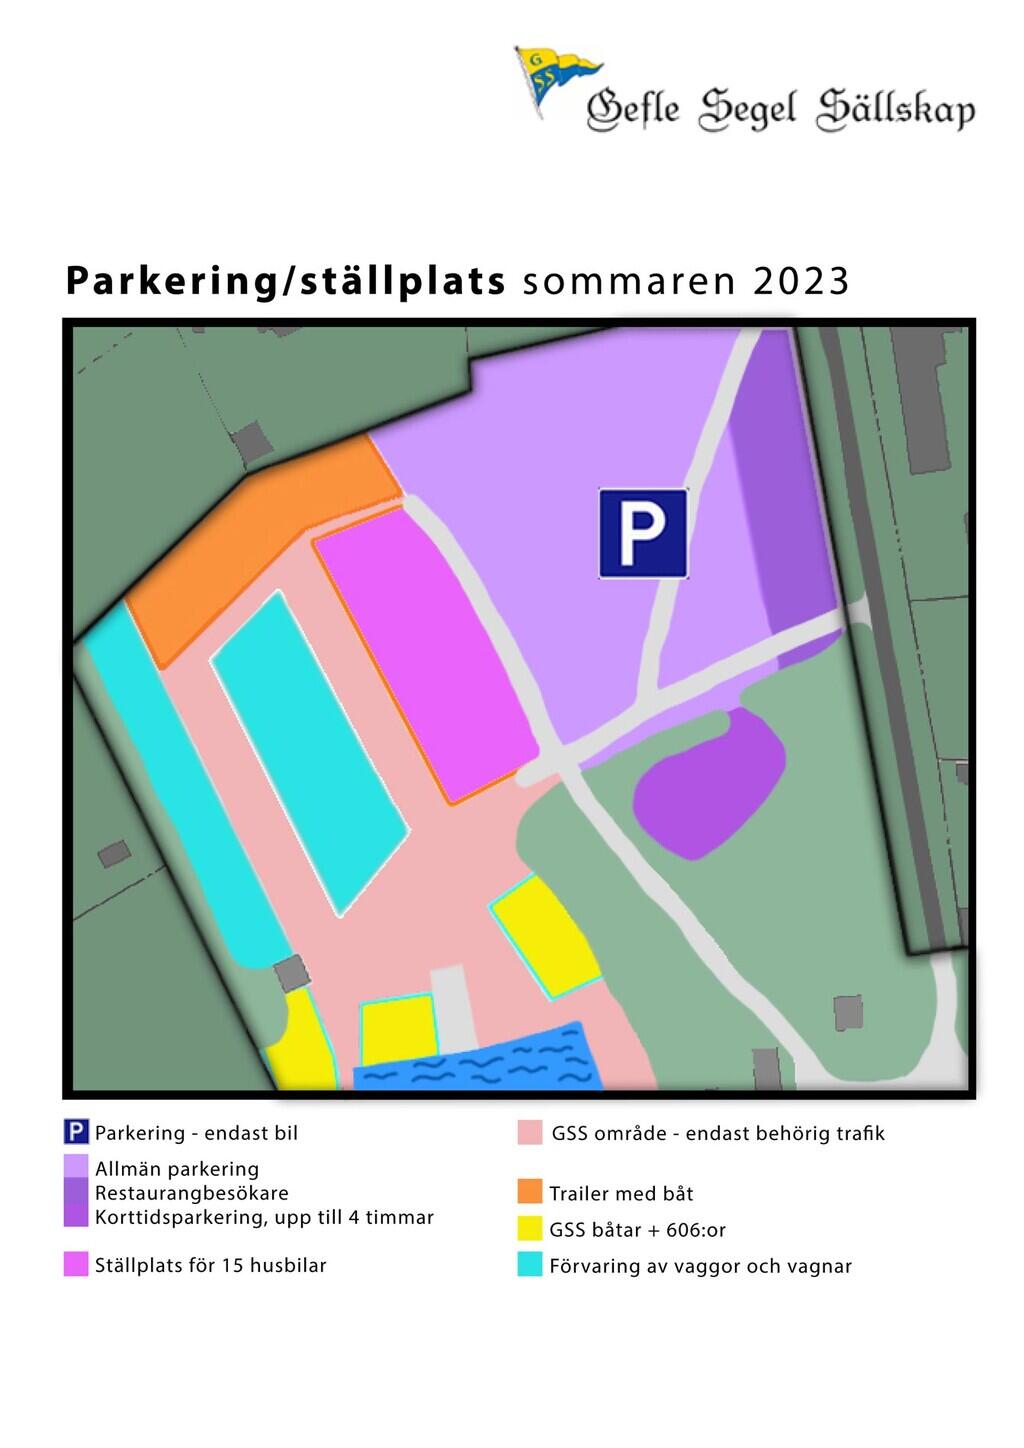 Huseliiharen parkering 2023